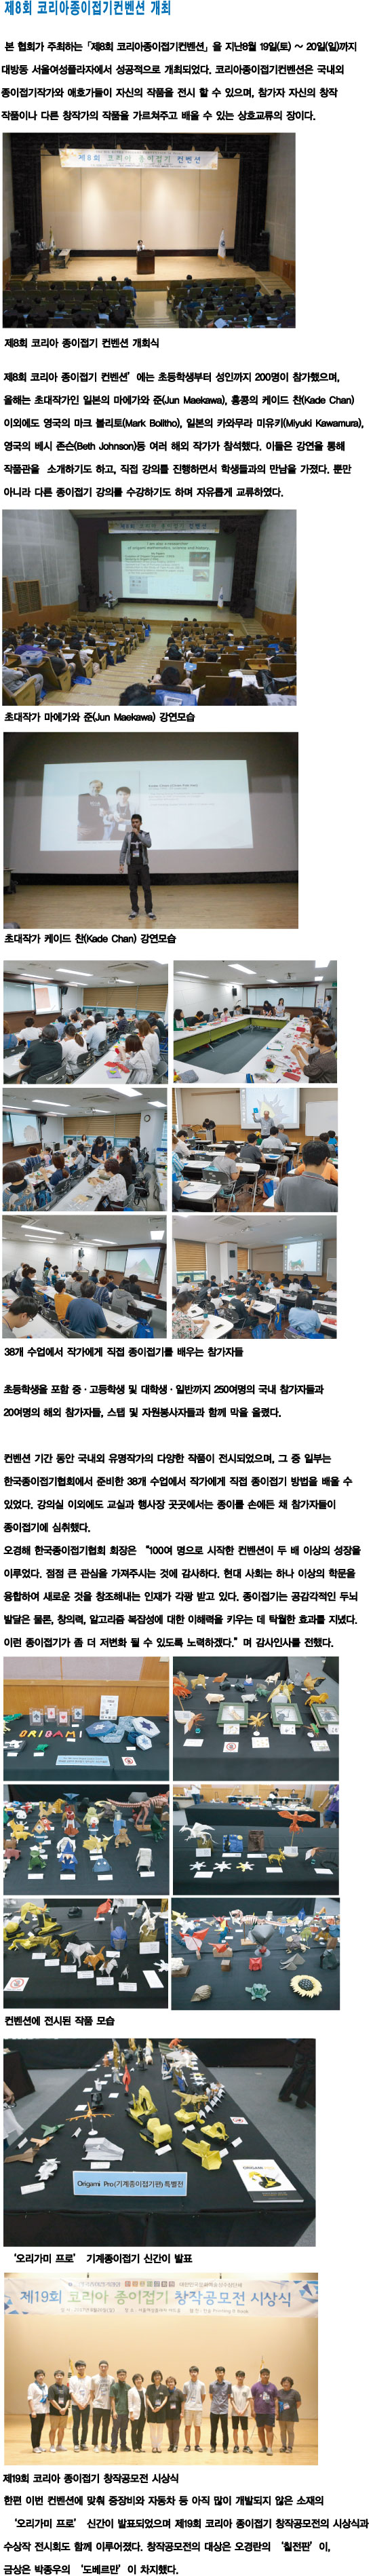 17.09.18 제8회 코리아종이접기컨벤션 개최2.jpg